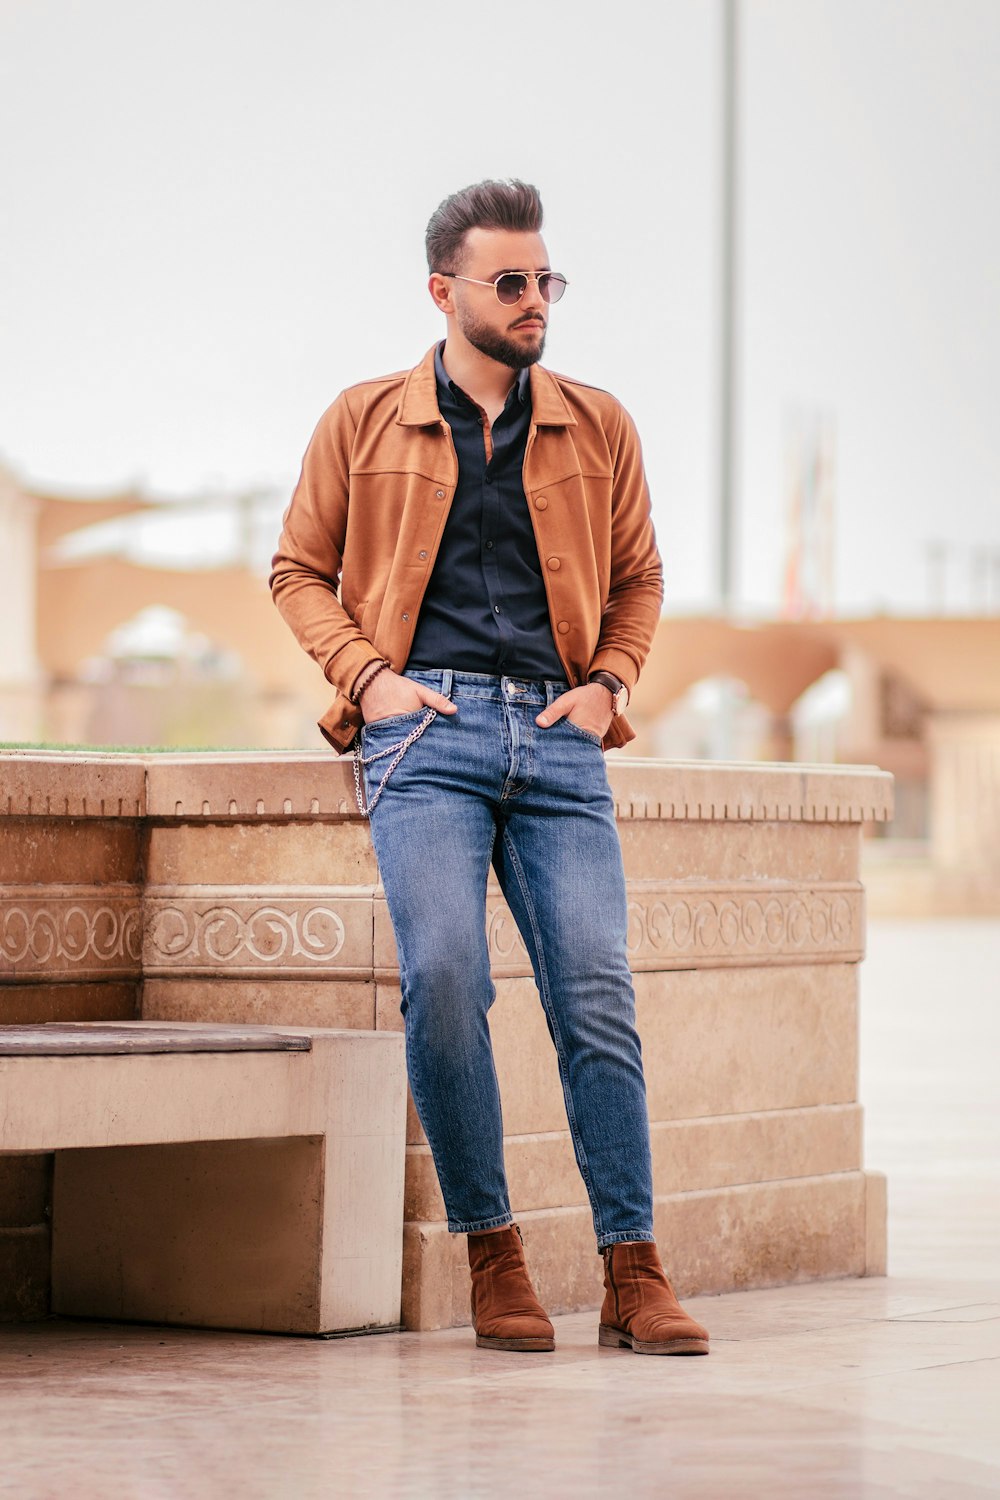 homem em jaqueta marrom e jeans azul sentado no banco de concreto marrom durante o dia